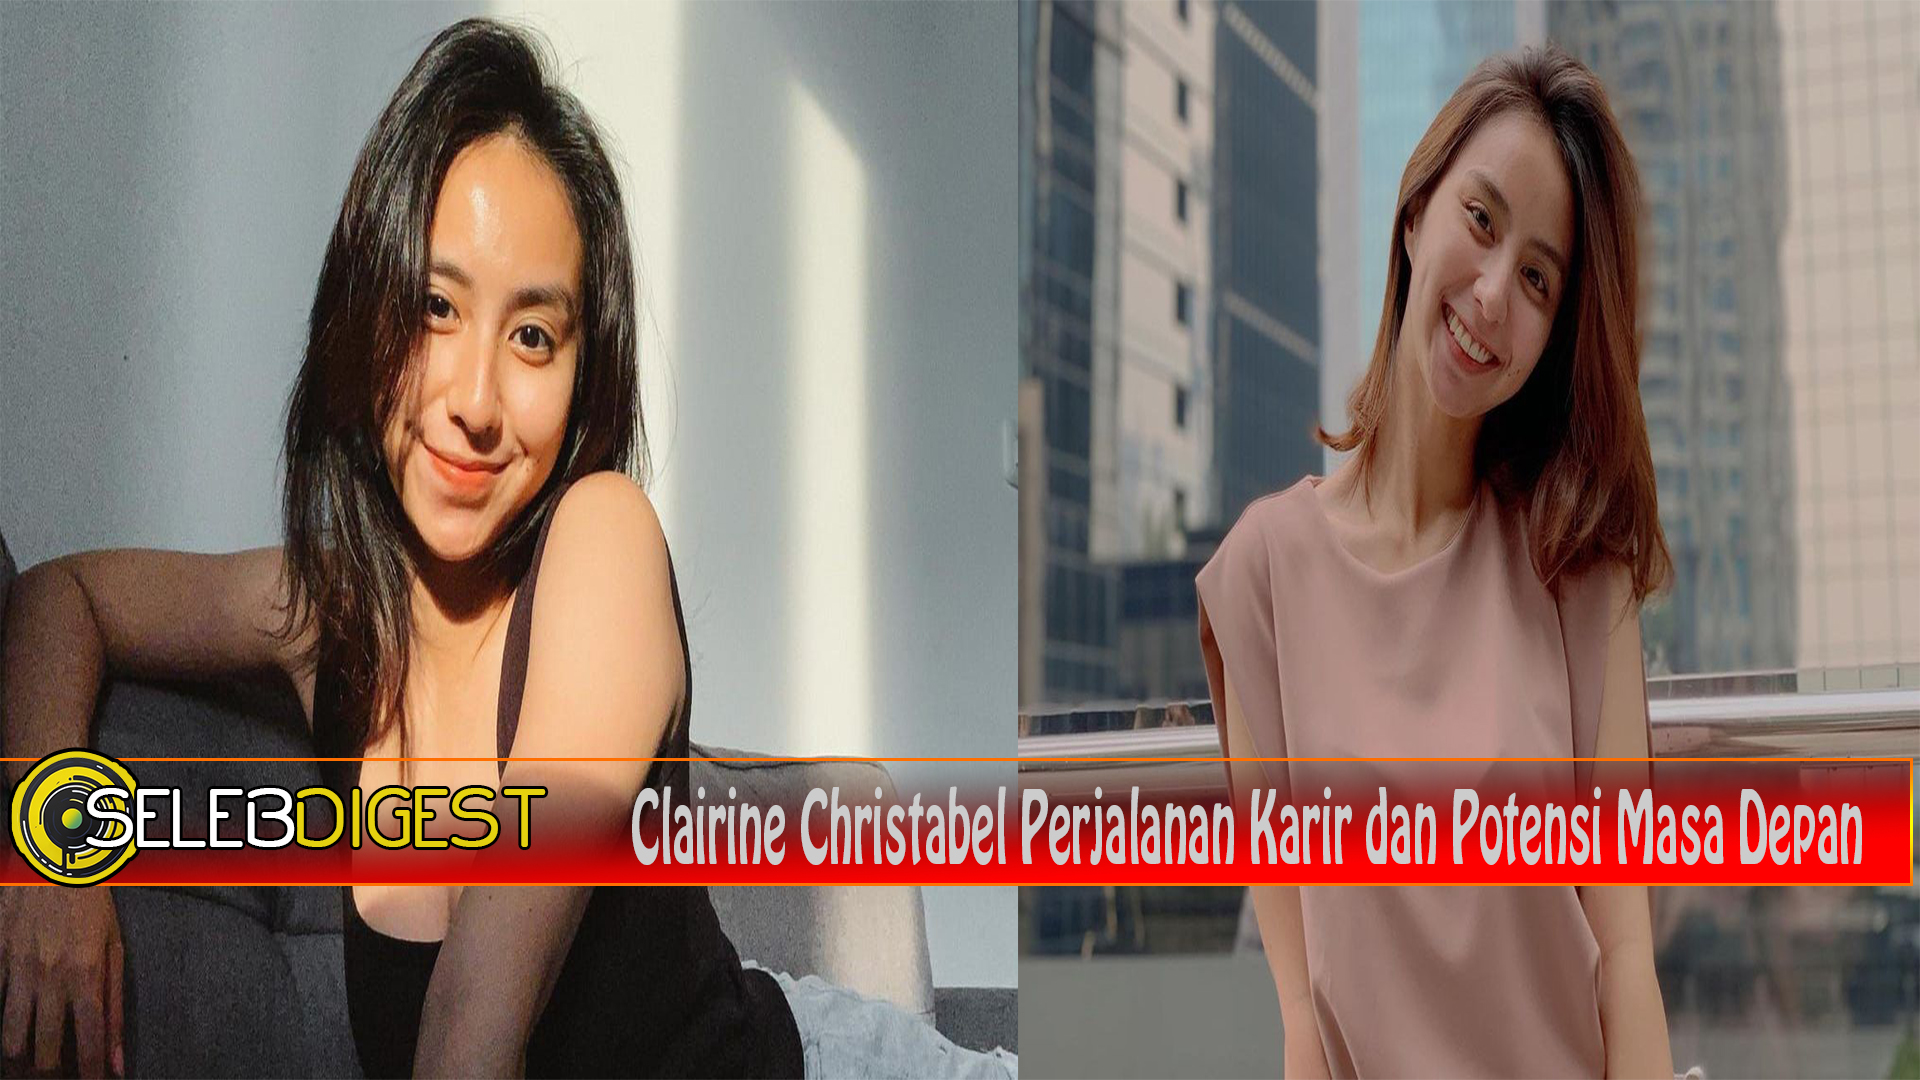 Clairine Christabel Perjalanan Karir dan Potensi Masa Depan